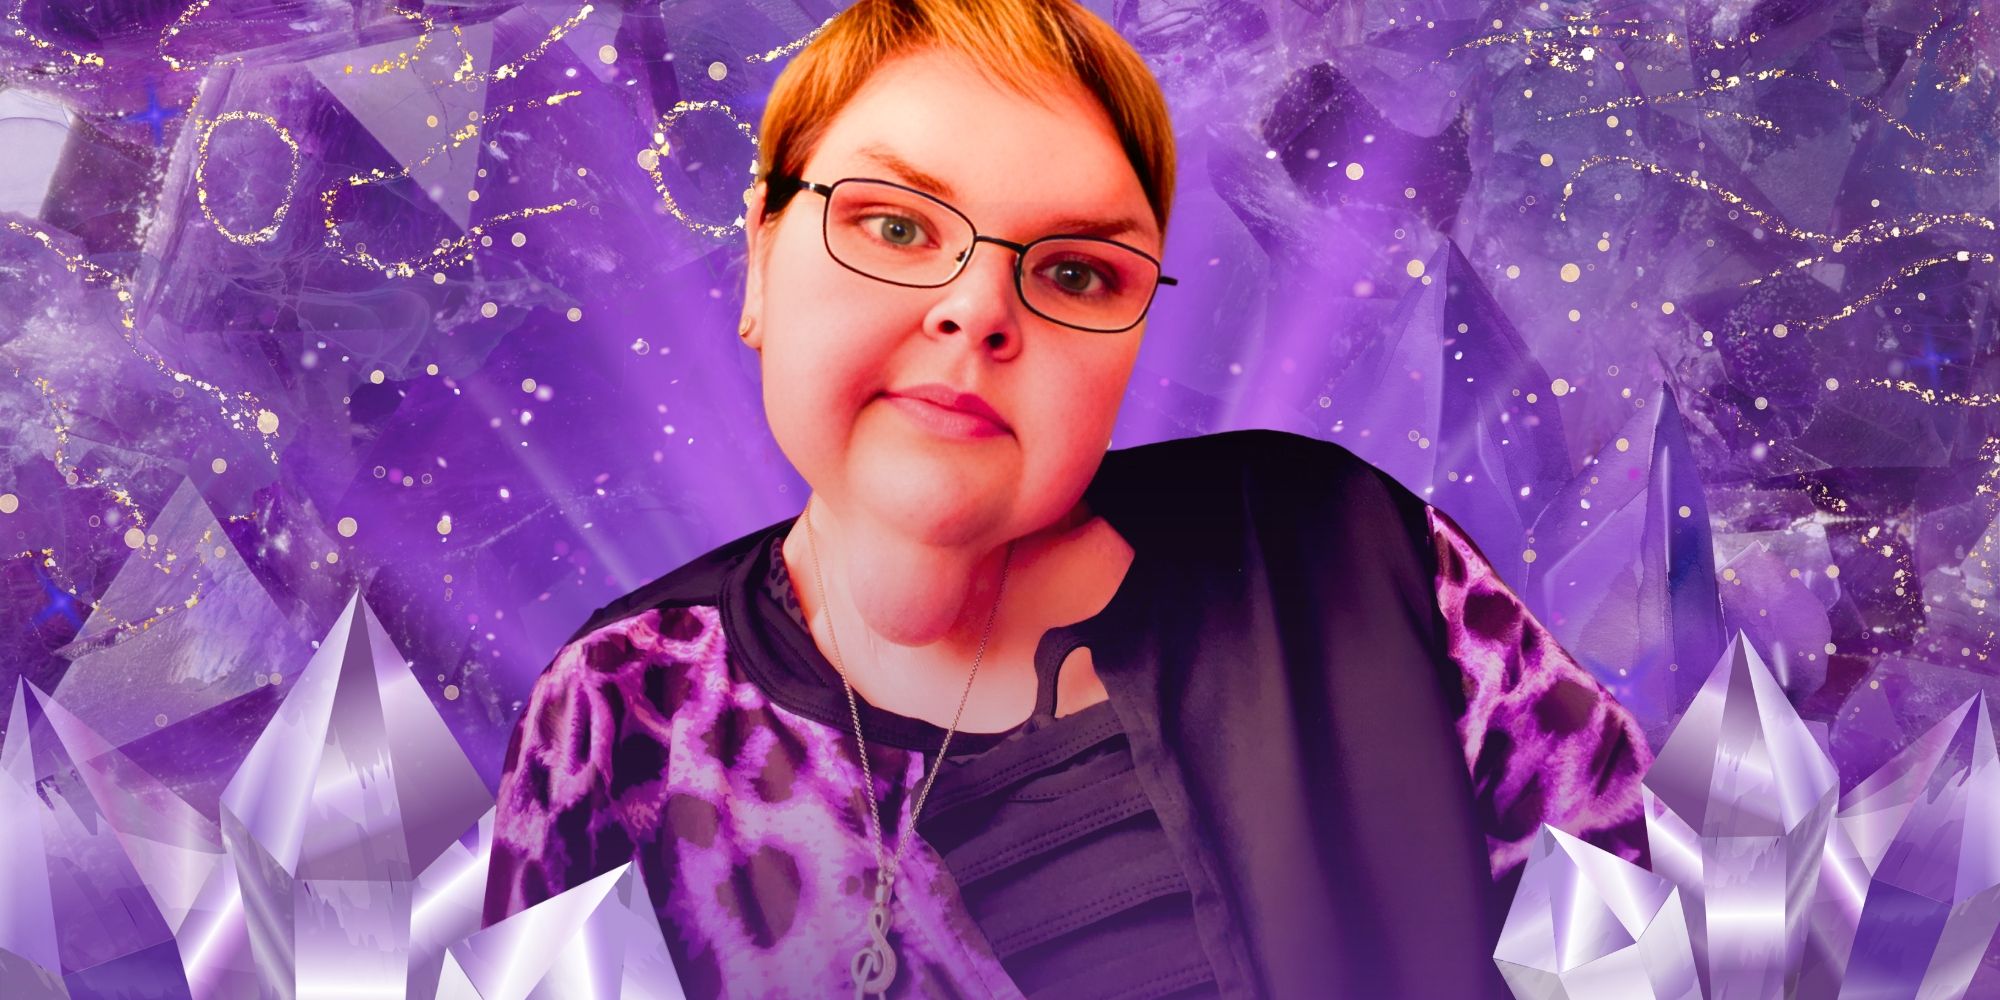 Hermanas de 1000 libras: "¡Lluvia púrpura!": Los atuendos morados más nuevos de Tammy Slaton después de un hito extraordinario en la pérdida de peso